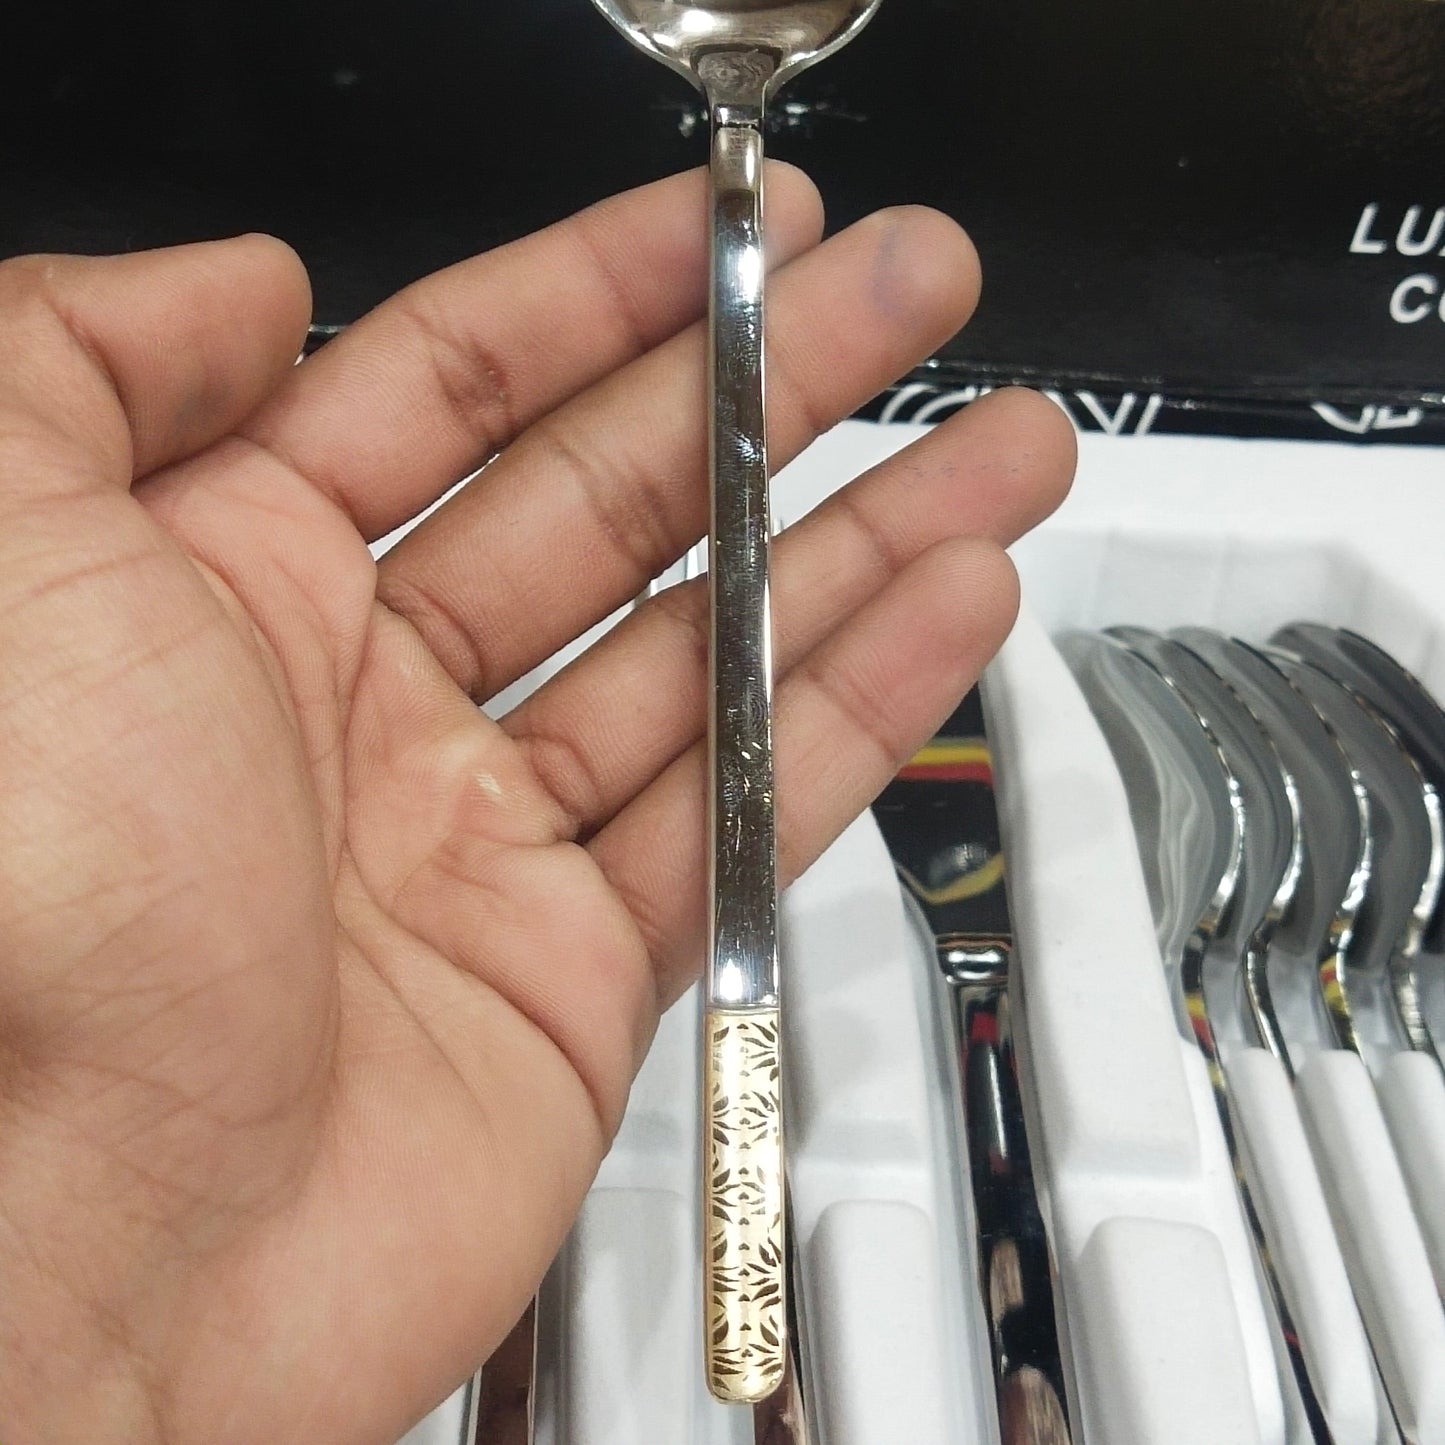 Ayd 24 Pcs Cutlery Set (Silver)